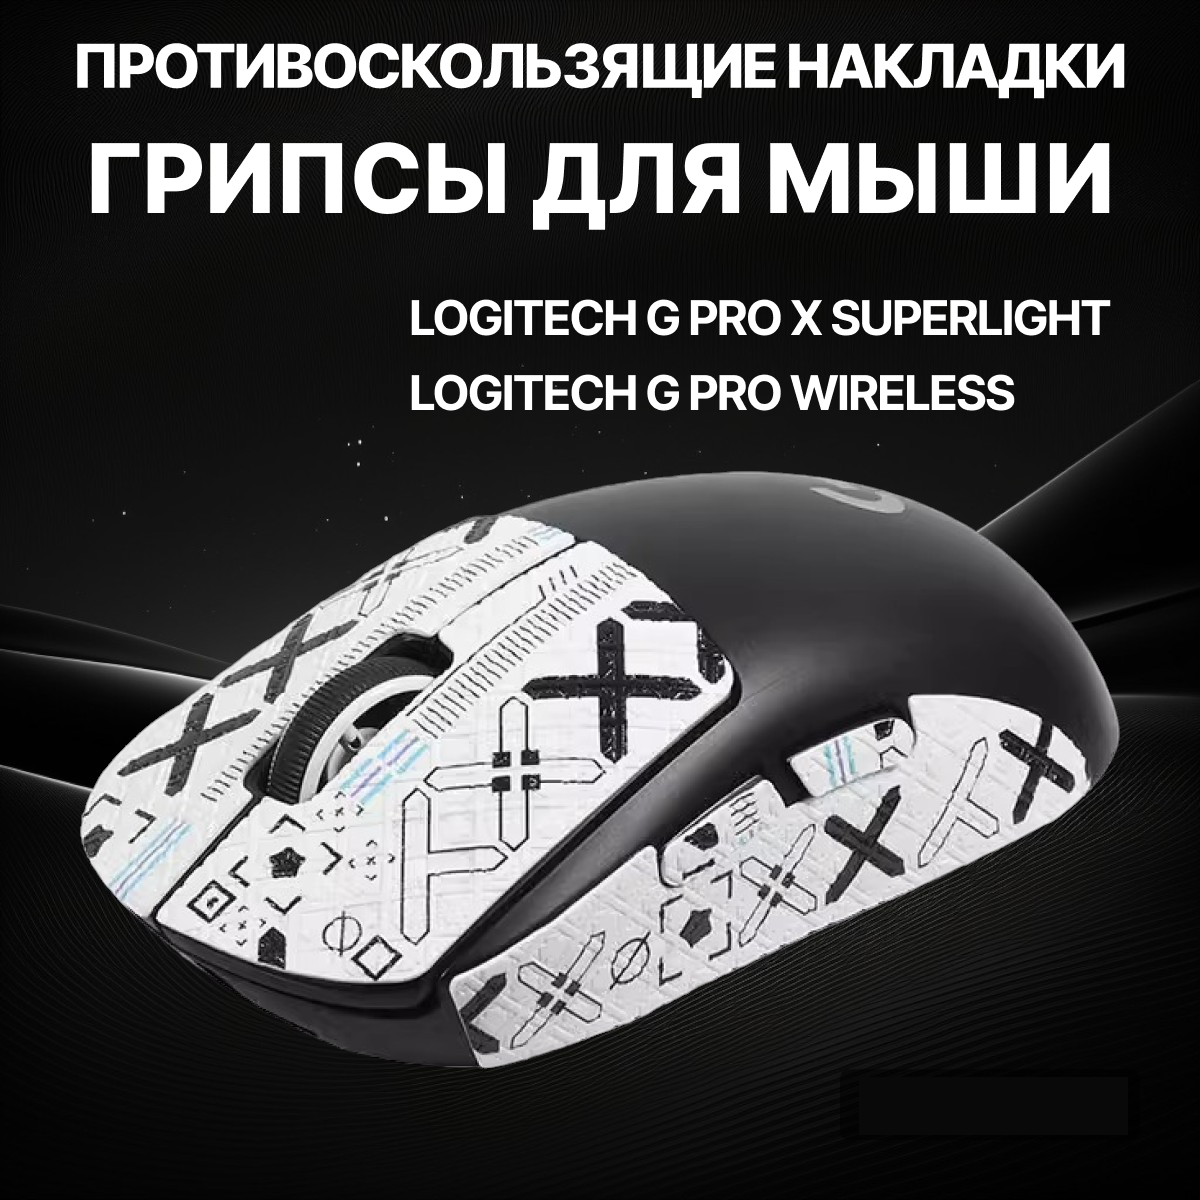 Грипсы для Logitech G Pro X Superlight и G Pro Wireless / Противоскользящие накладки и наклейки для игровой мыши (Поток информации Белый)